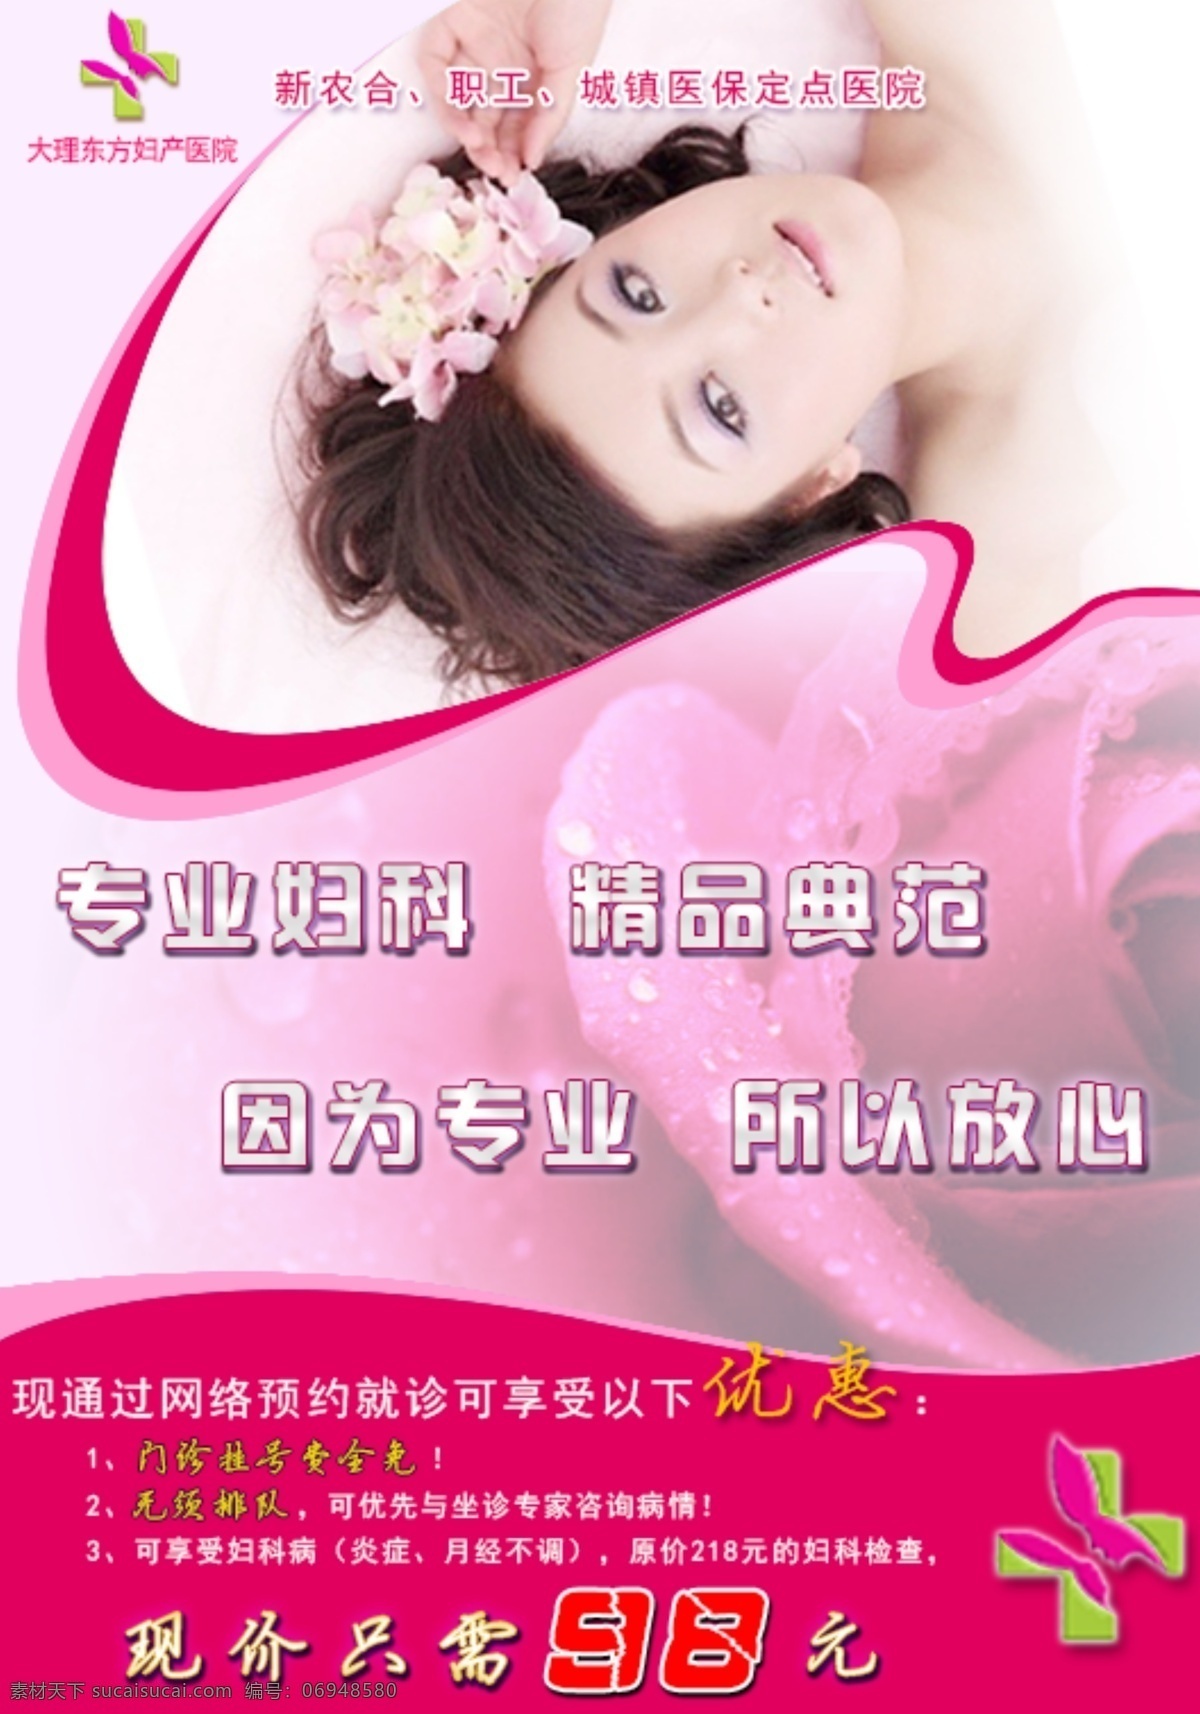 妇科 广告 红色 美女 品牌 网页模板 源文件 中文模板 模板下载 妇科品牌广告 淘宝素材 淘宝促销海报